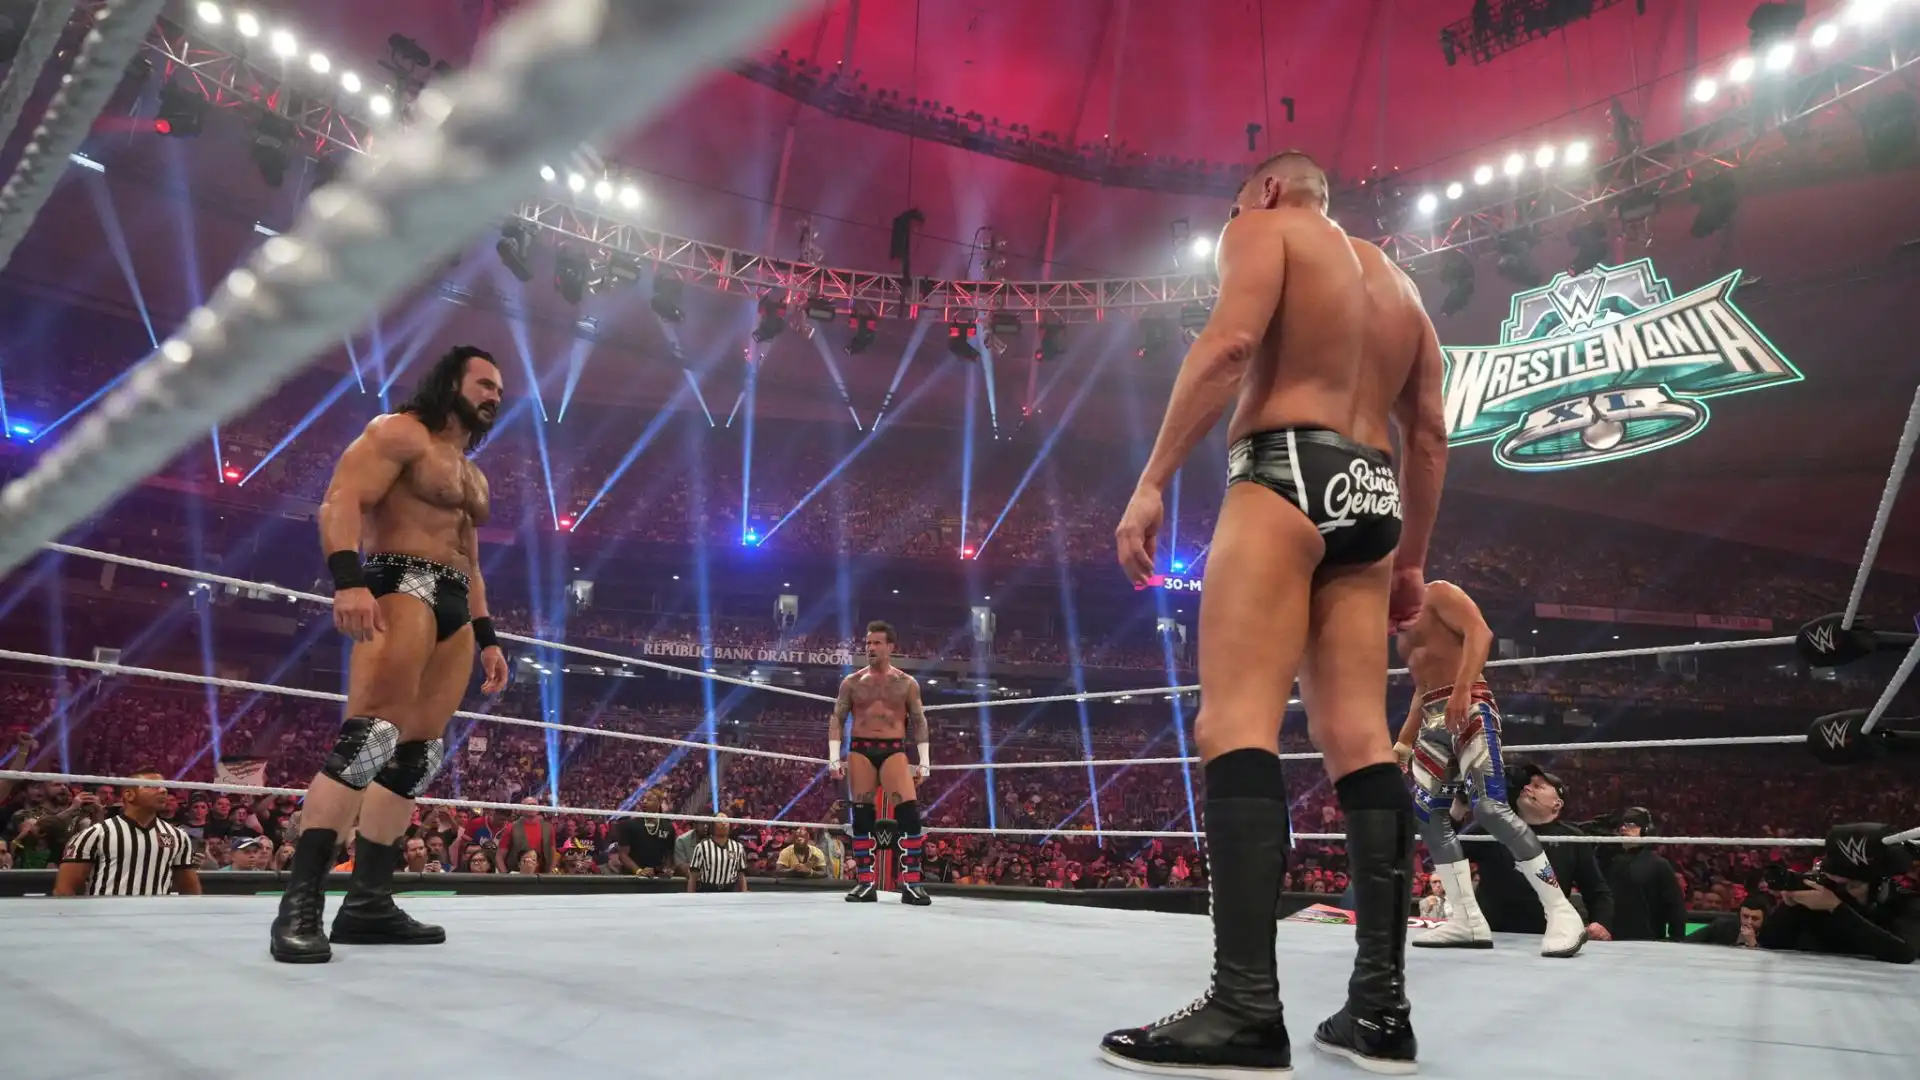 Sono anche stati svelati alcuni dei wrestler che saliranno sul ring.